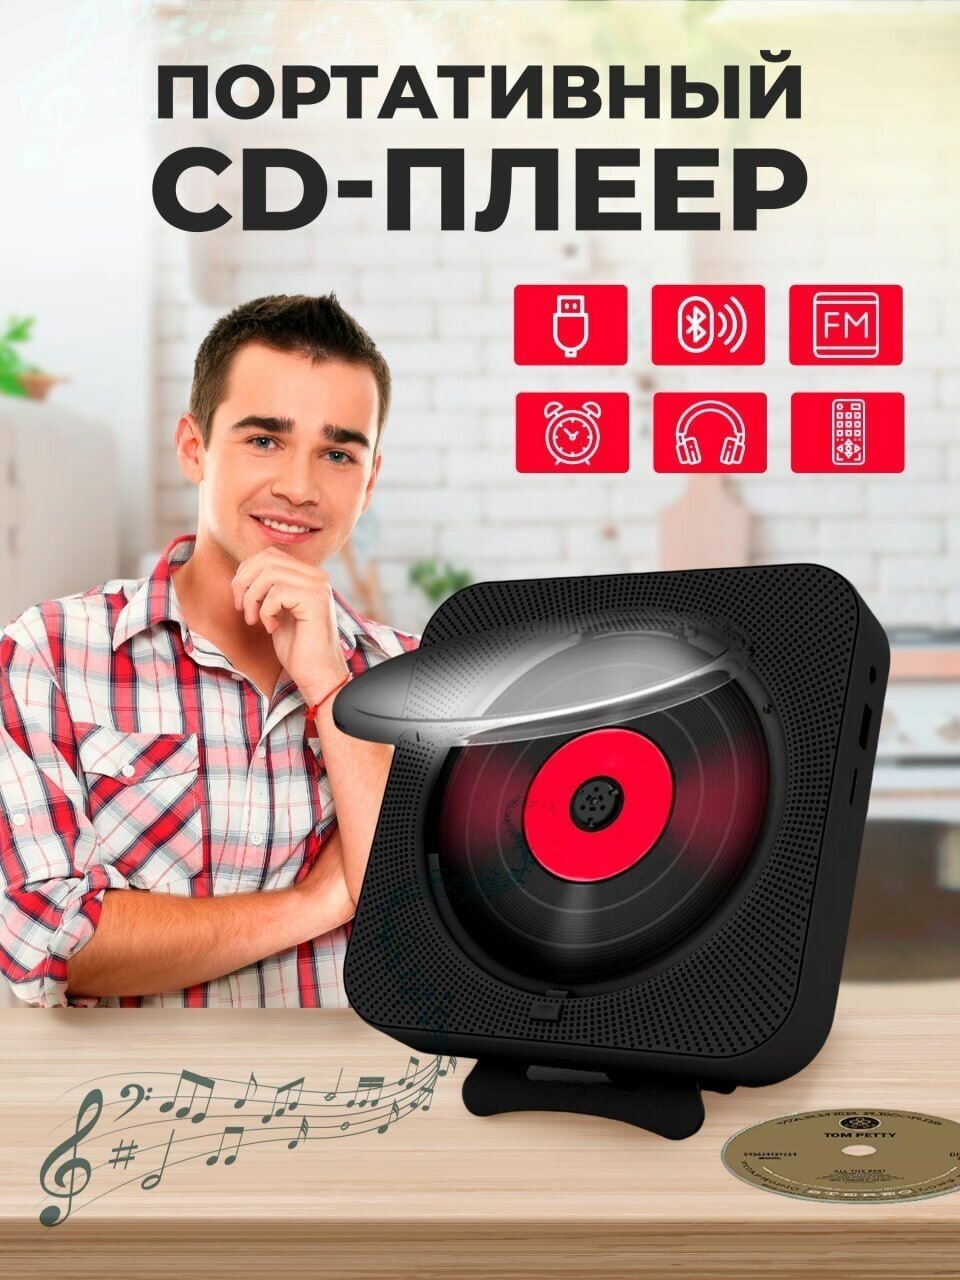 Портативный CD плеер с пультом управления Радио, CD, USB, MP3, Bluetooth, SD карта, AUX